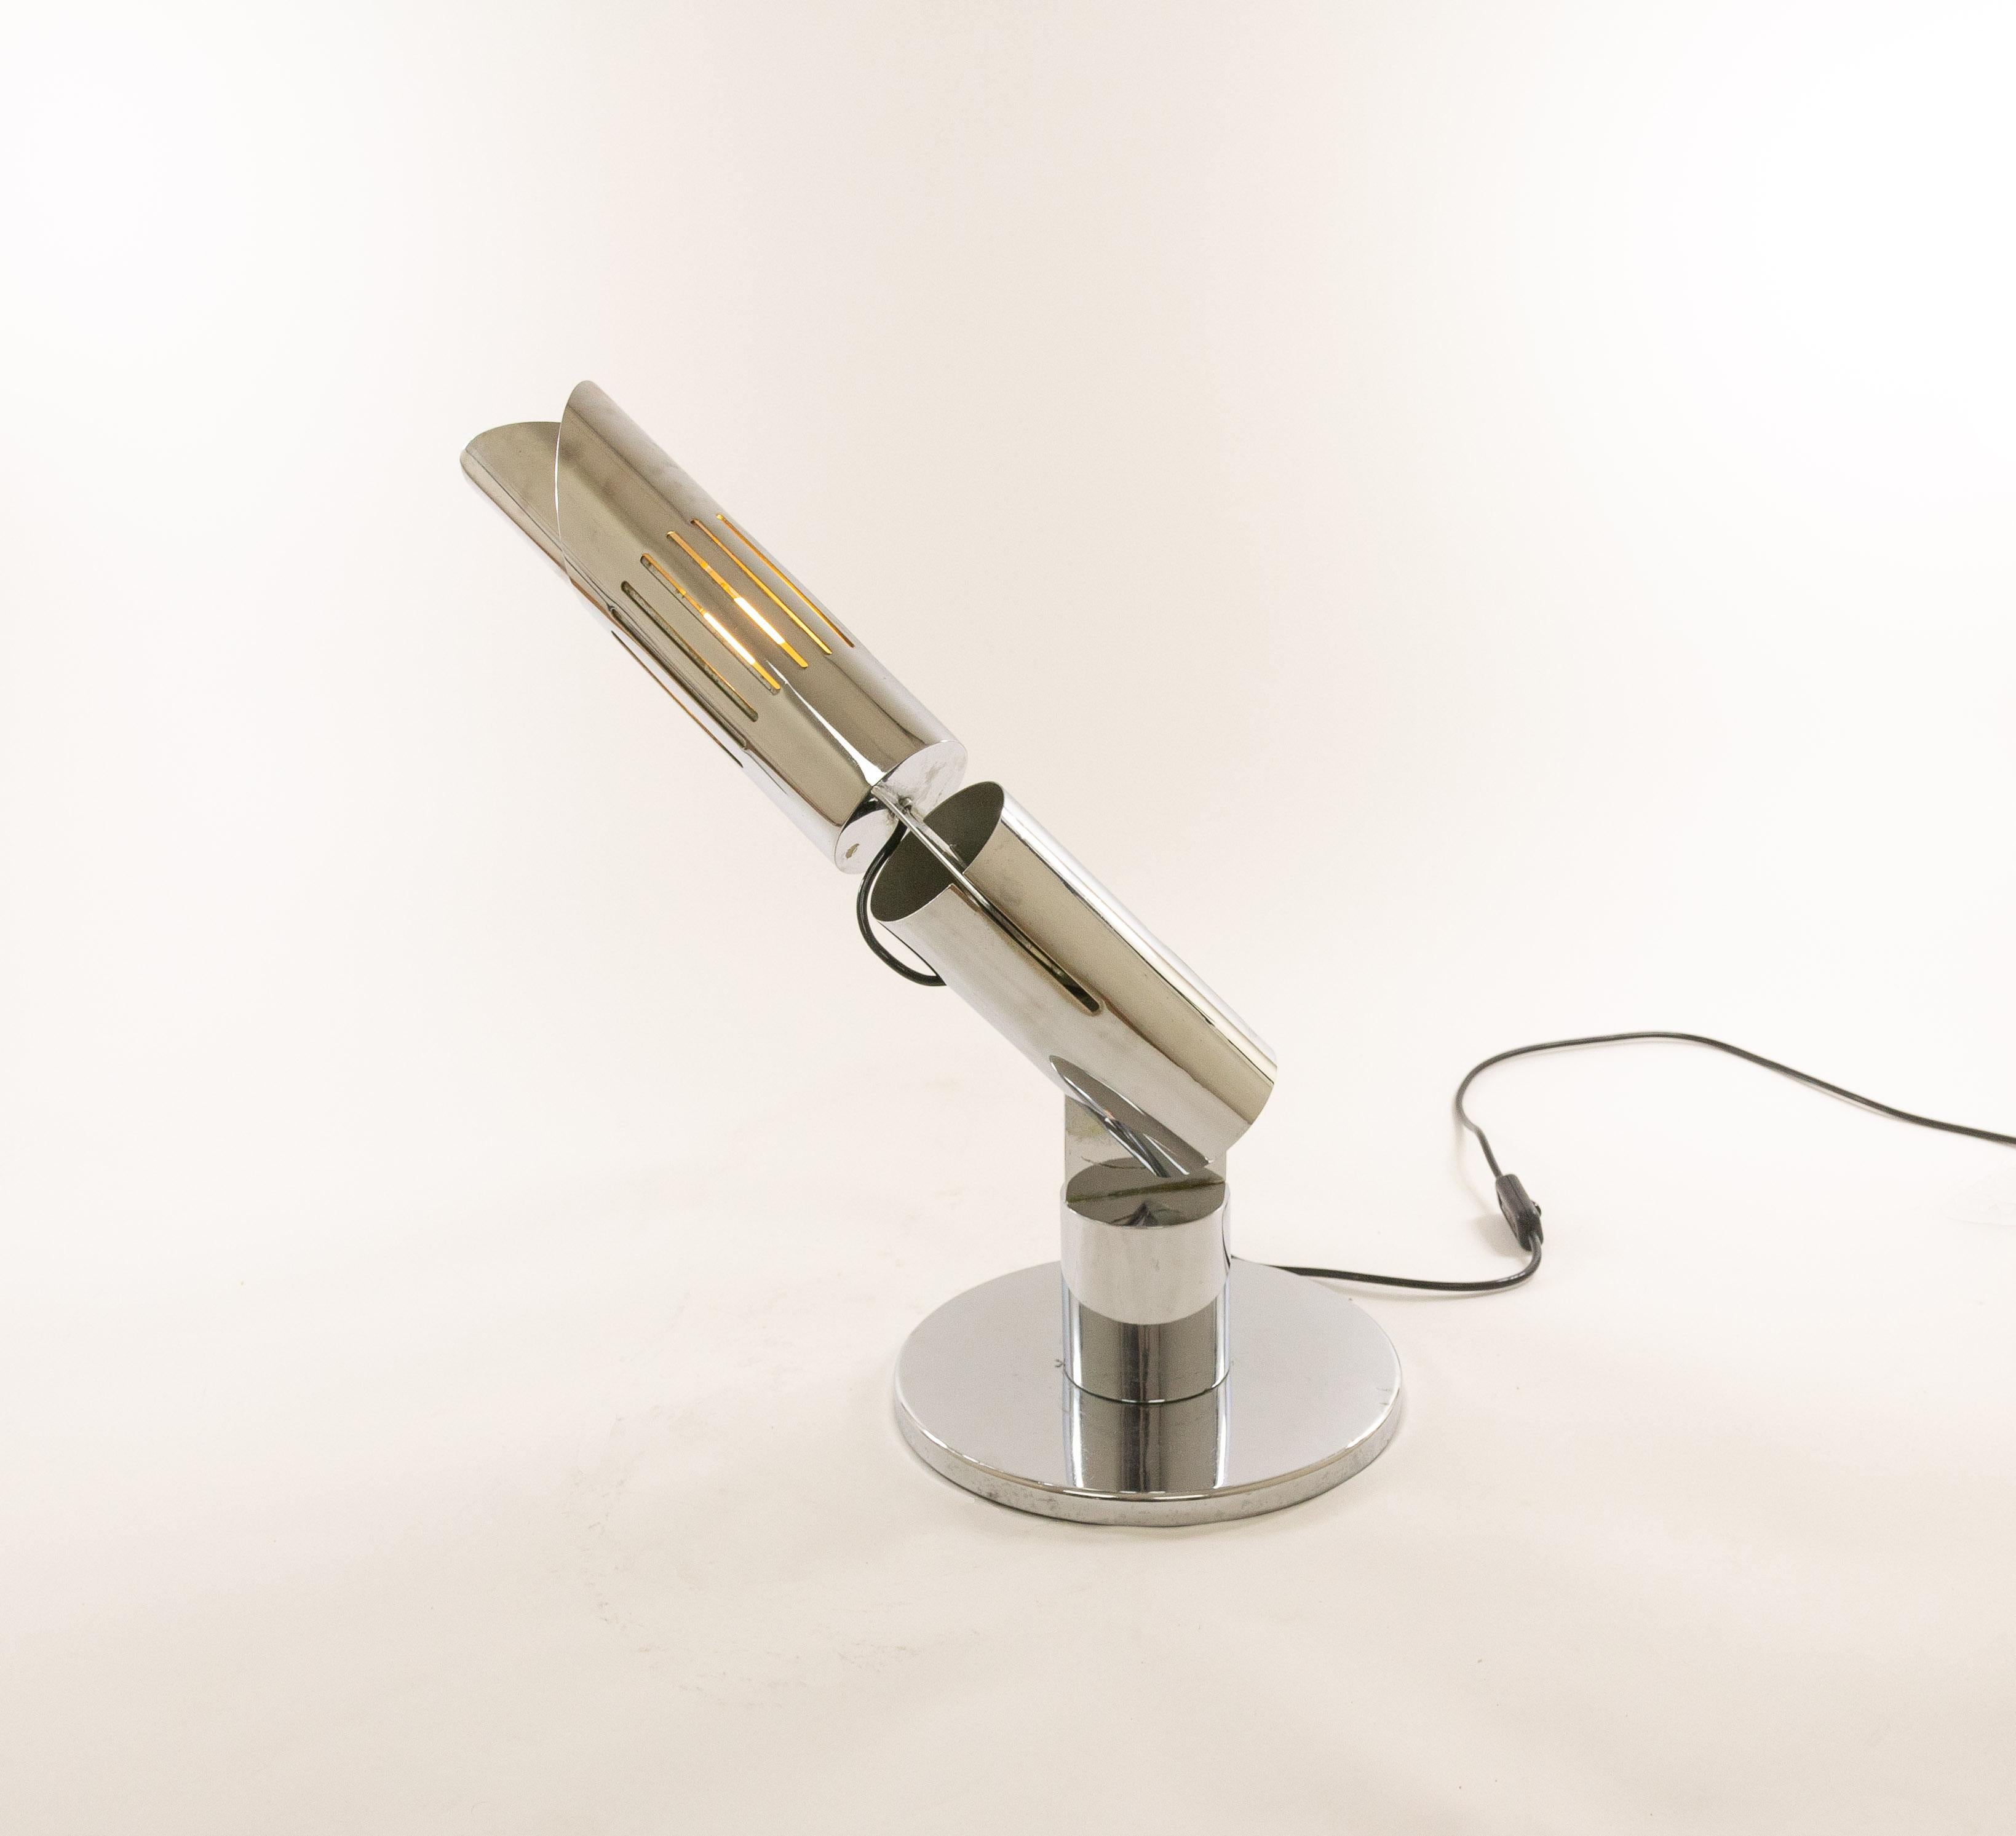 Lampe de table chromée, modèle Cobra, conçue par Gabriele D'ali en 1968 et produite par Francesconi.

Cette étonnante lampe de table Cobra peut être orientée dans toutes les directions car les différentes parties chromées sont reliées par des